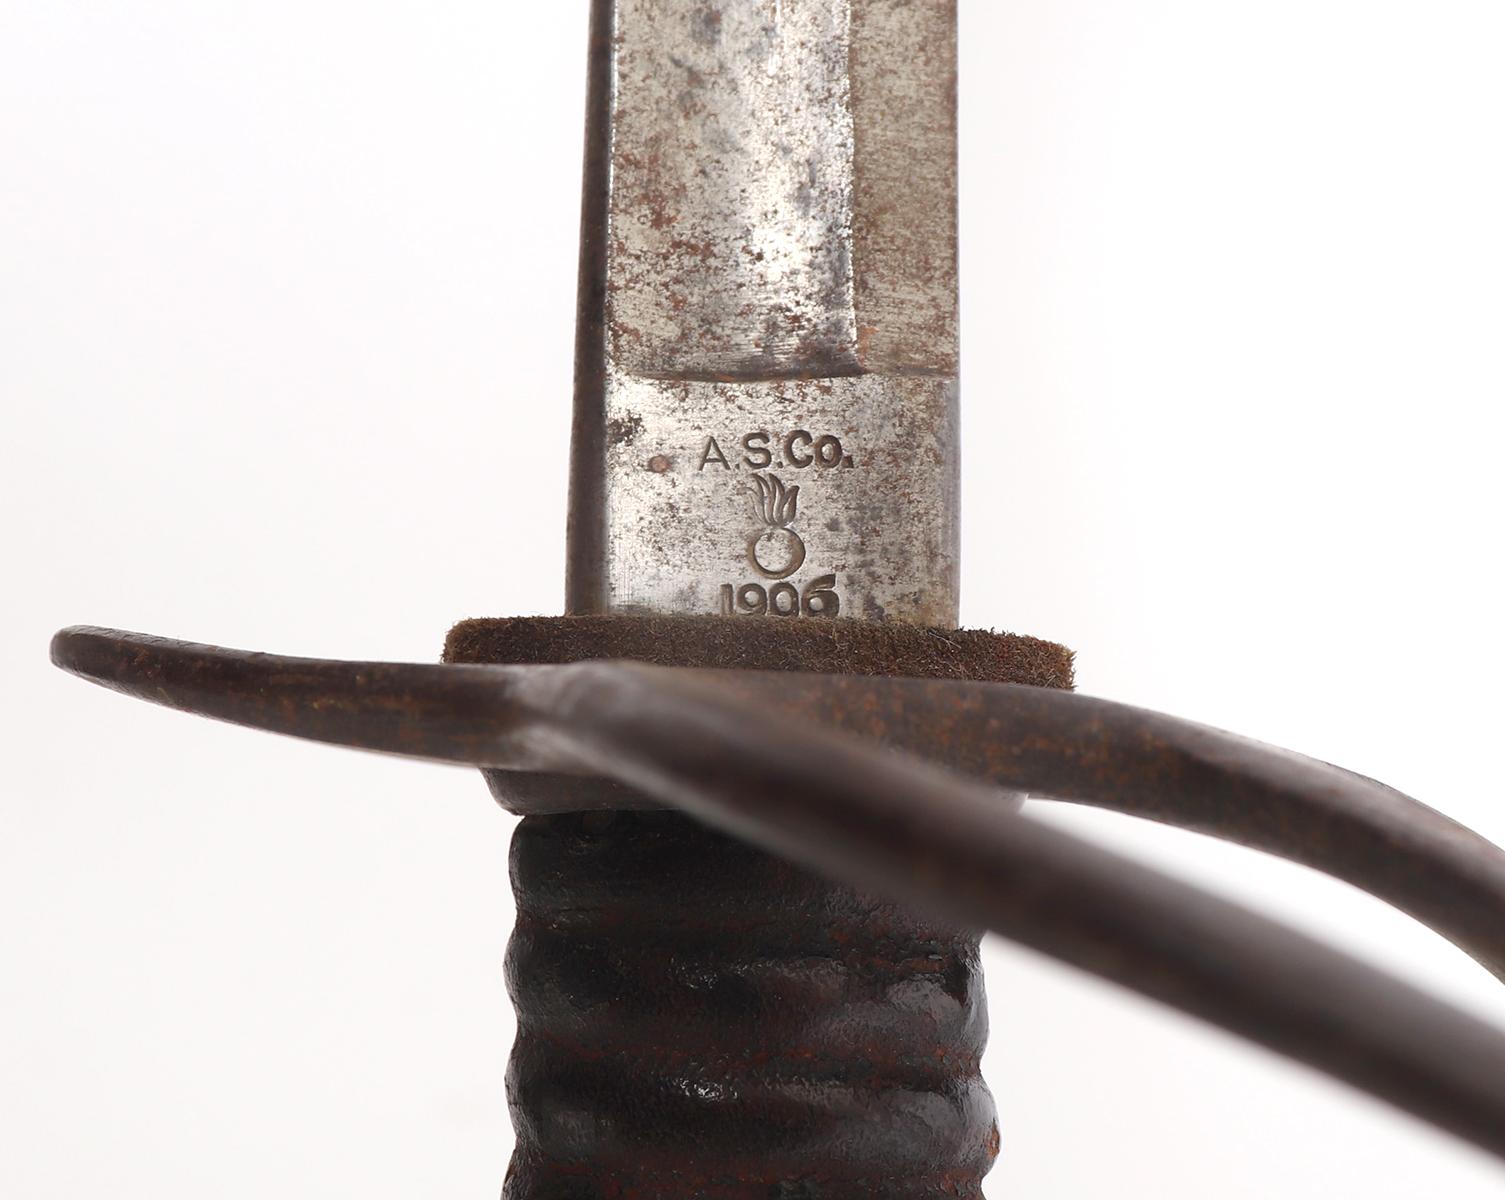 U.S. Model 1906 Steel Hilted Sword